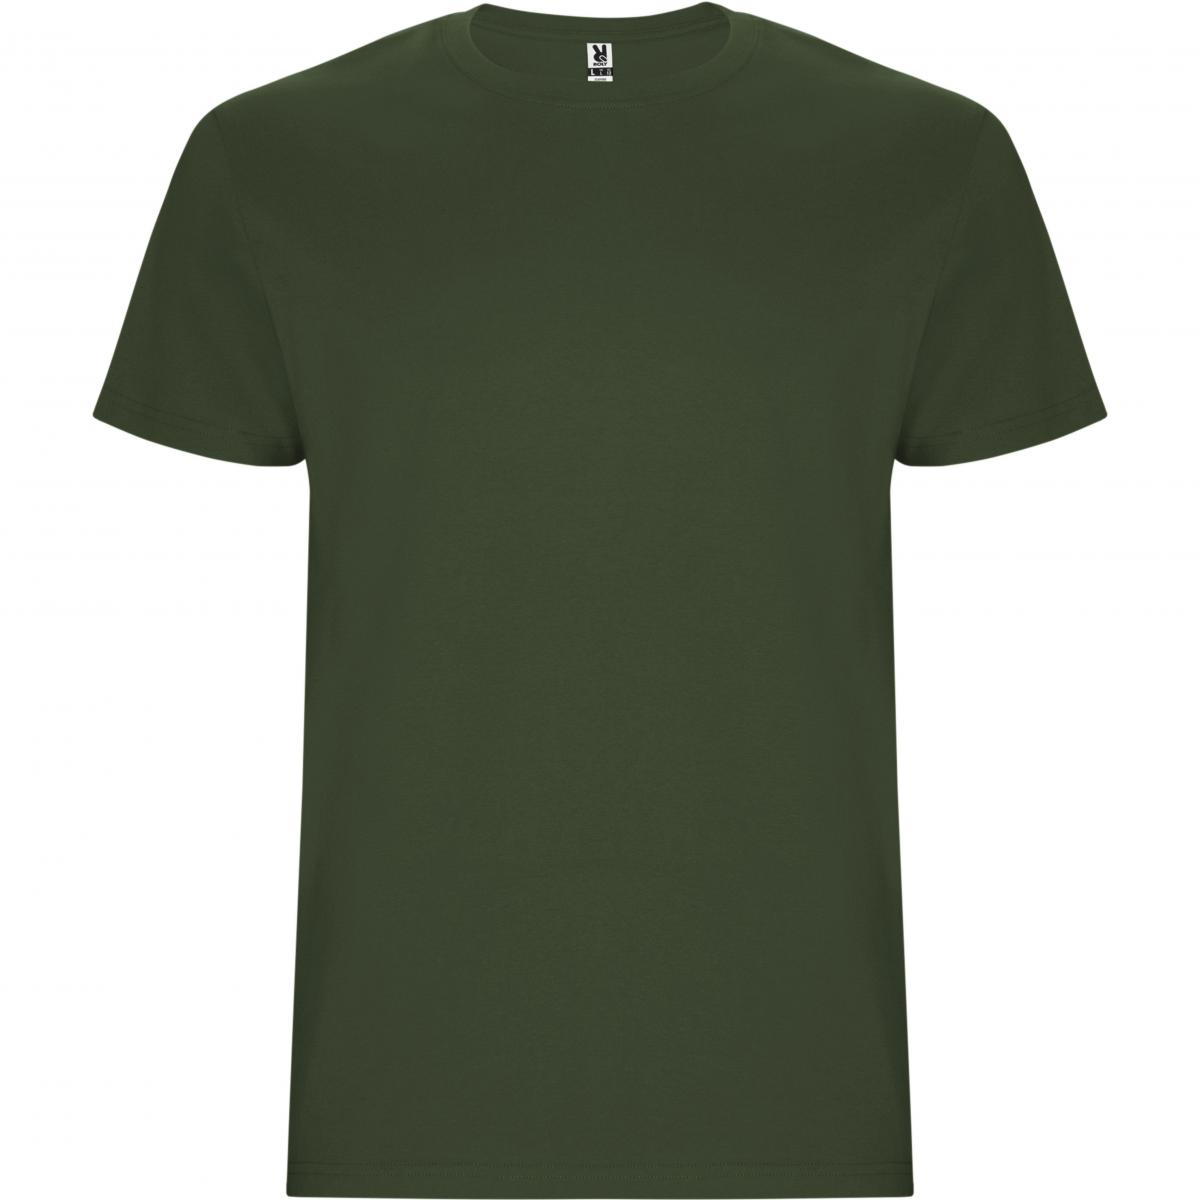 Hersteller: Roly Herstellernummer: CA6681 Artikelbezeichnung: Stafford T-Shirt - Doppellagiger Rundhalskragen Farbe: Venture Green 152